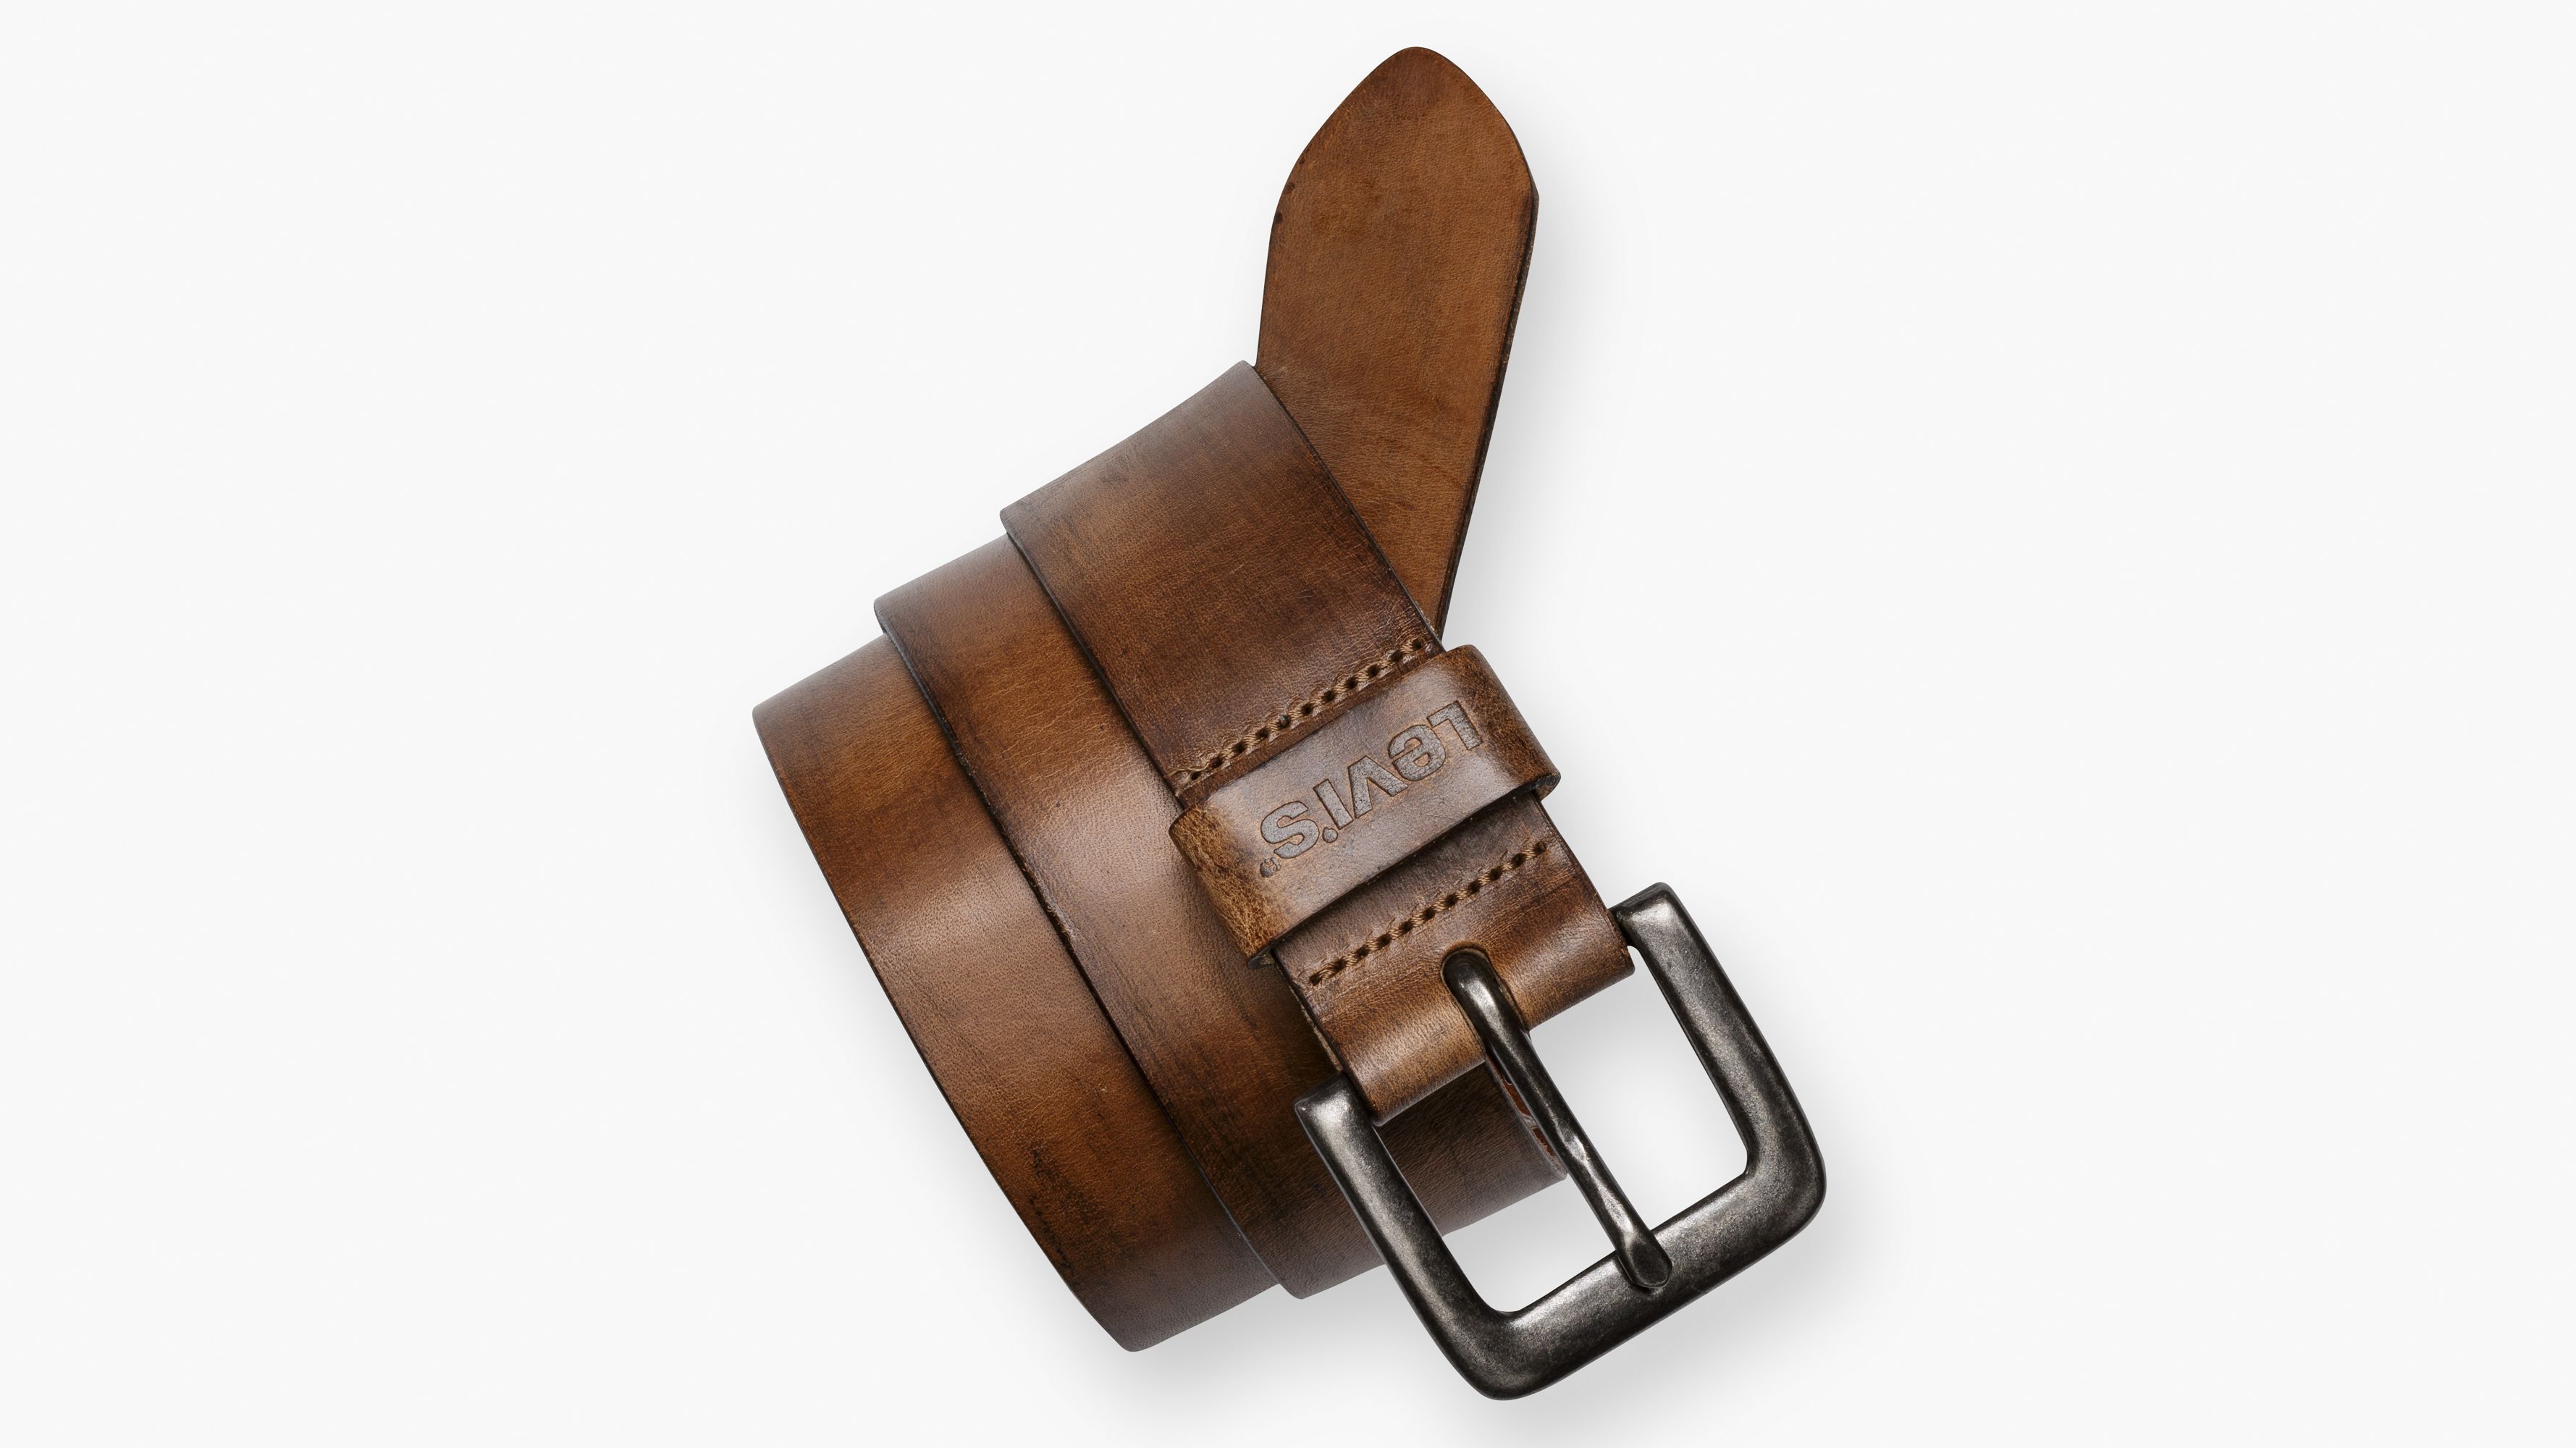 levis full grain leather belt